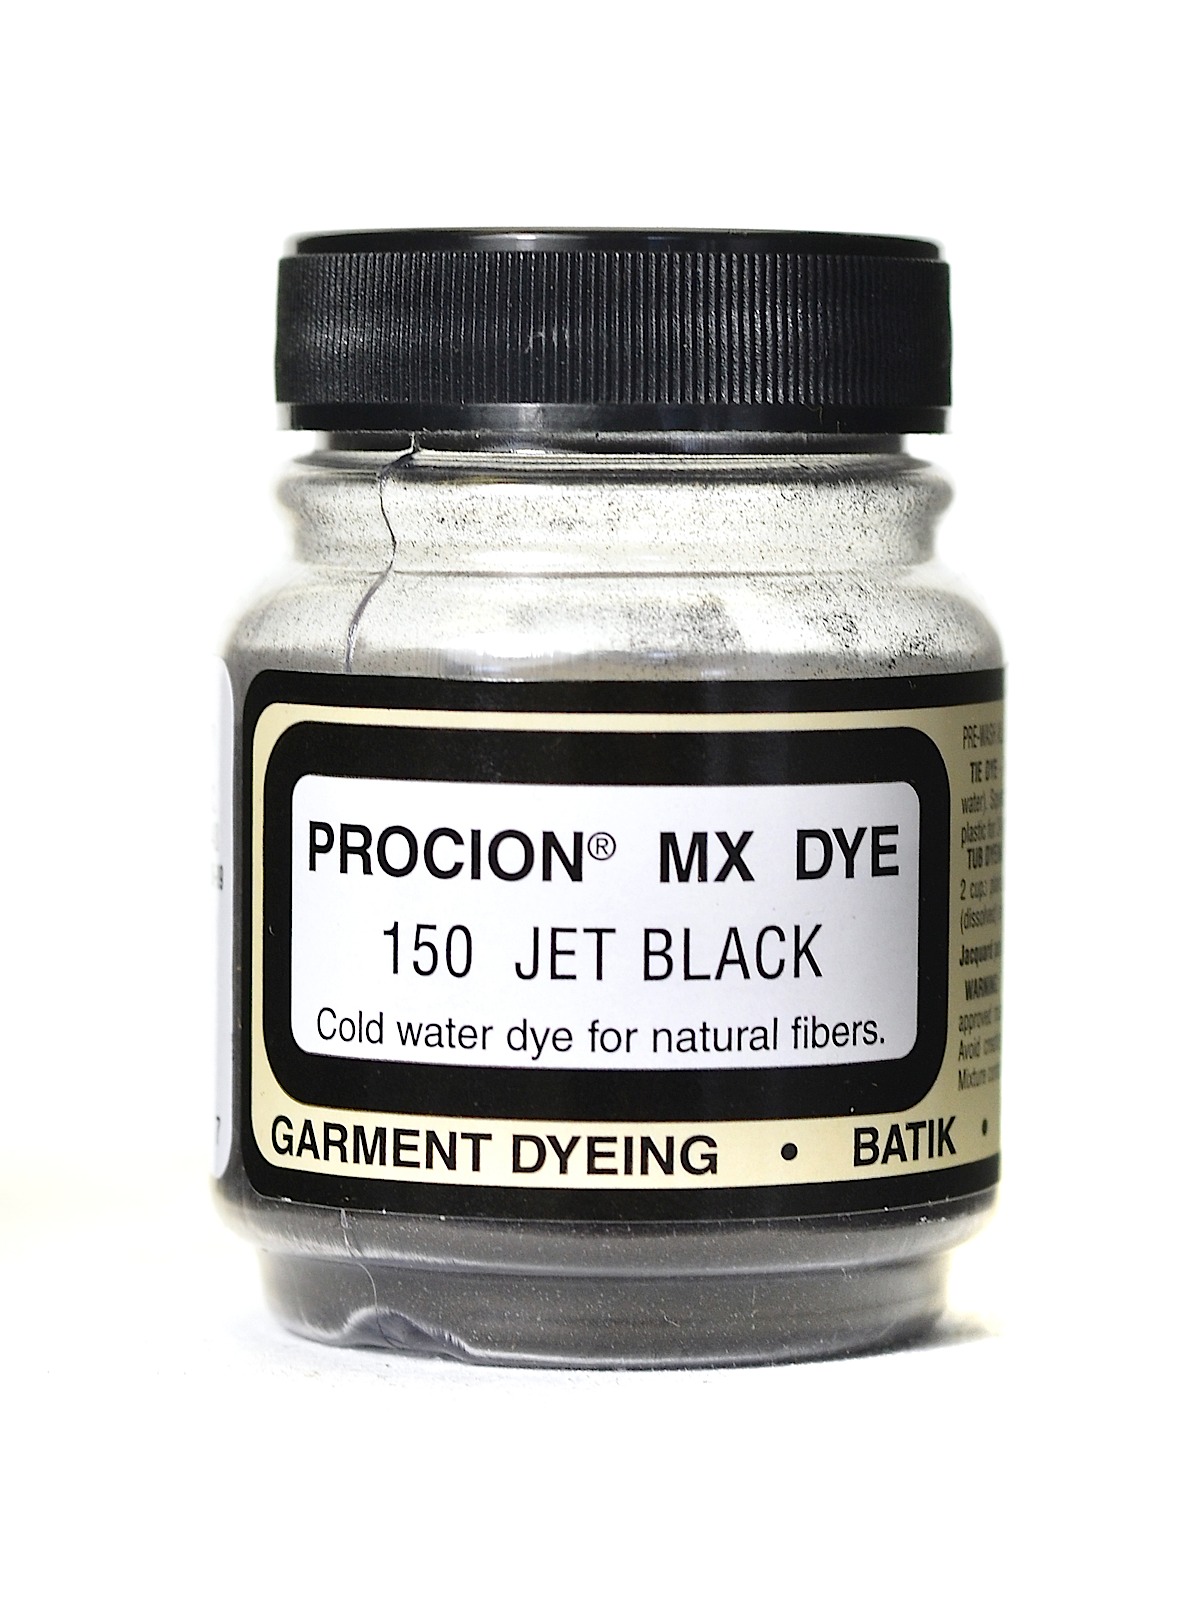 Jacquard Procion MX dye 2211 neutral grey